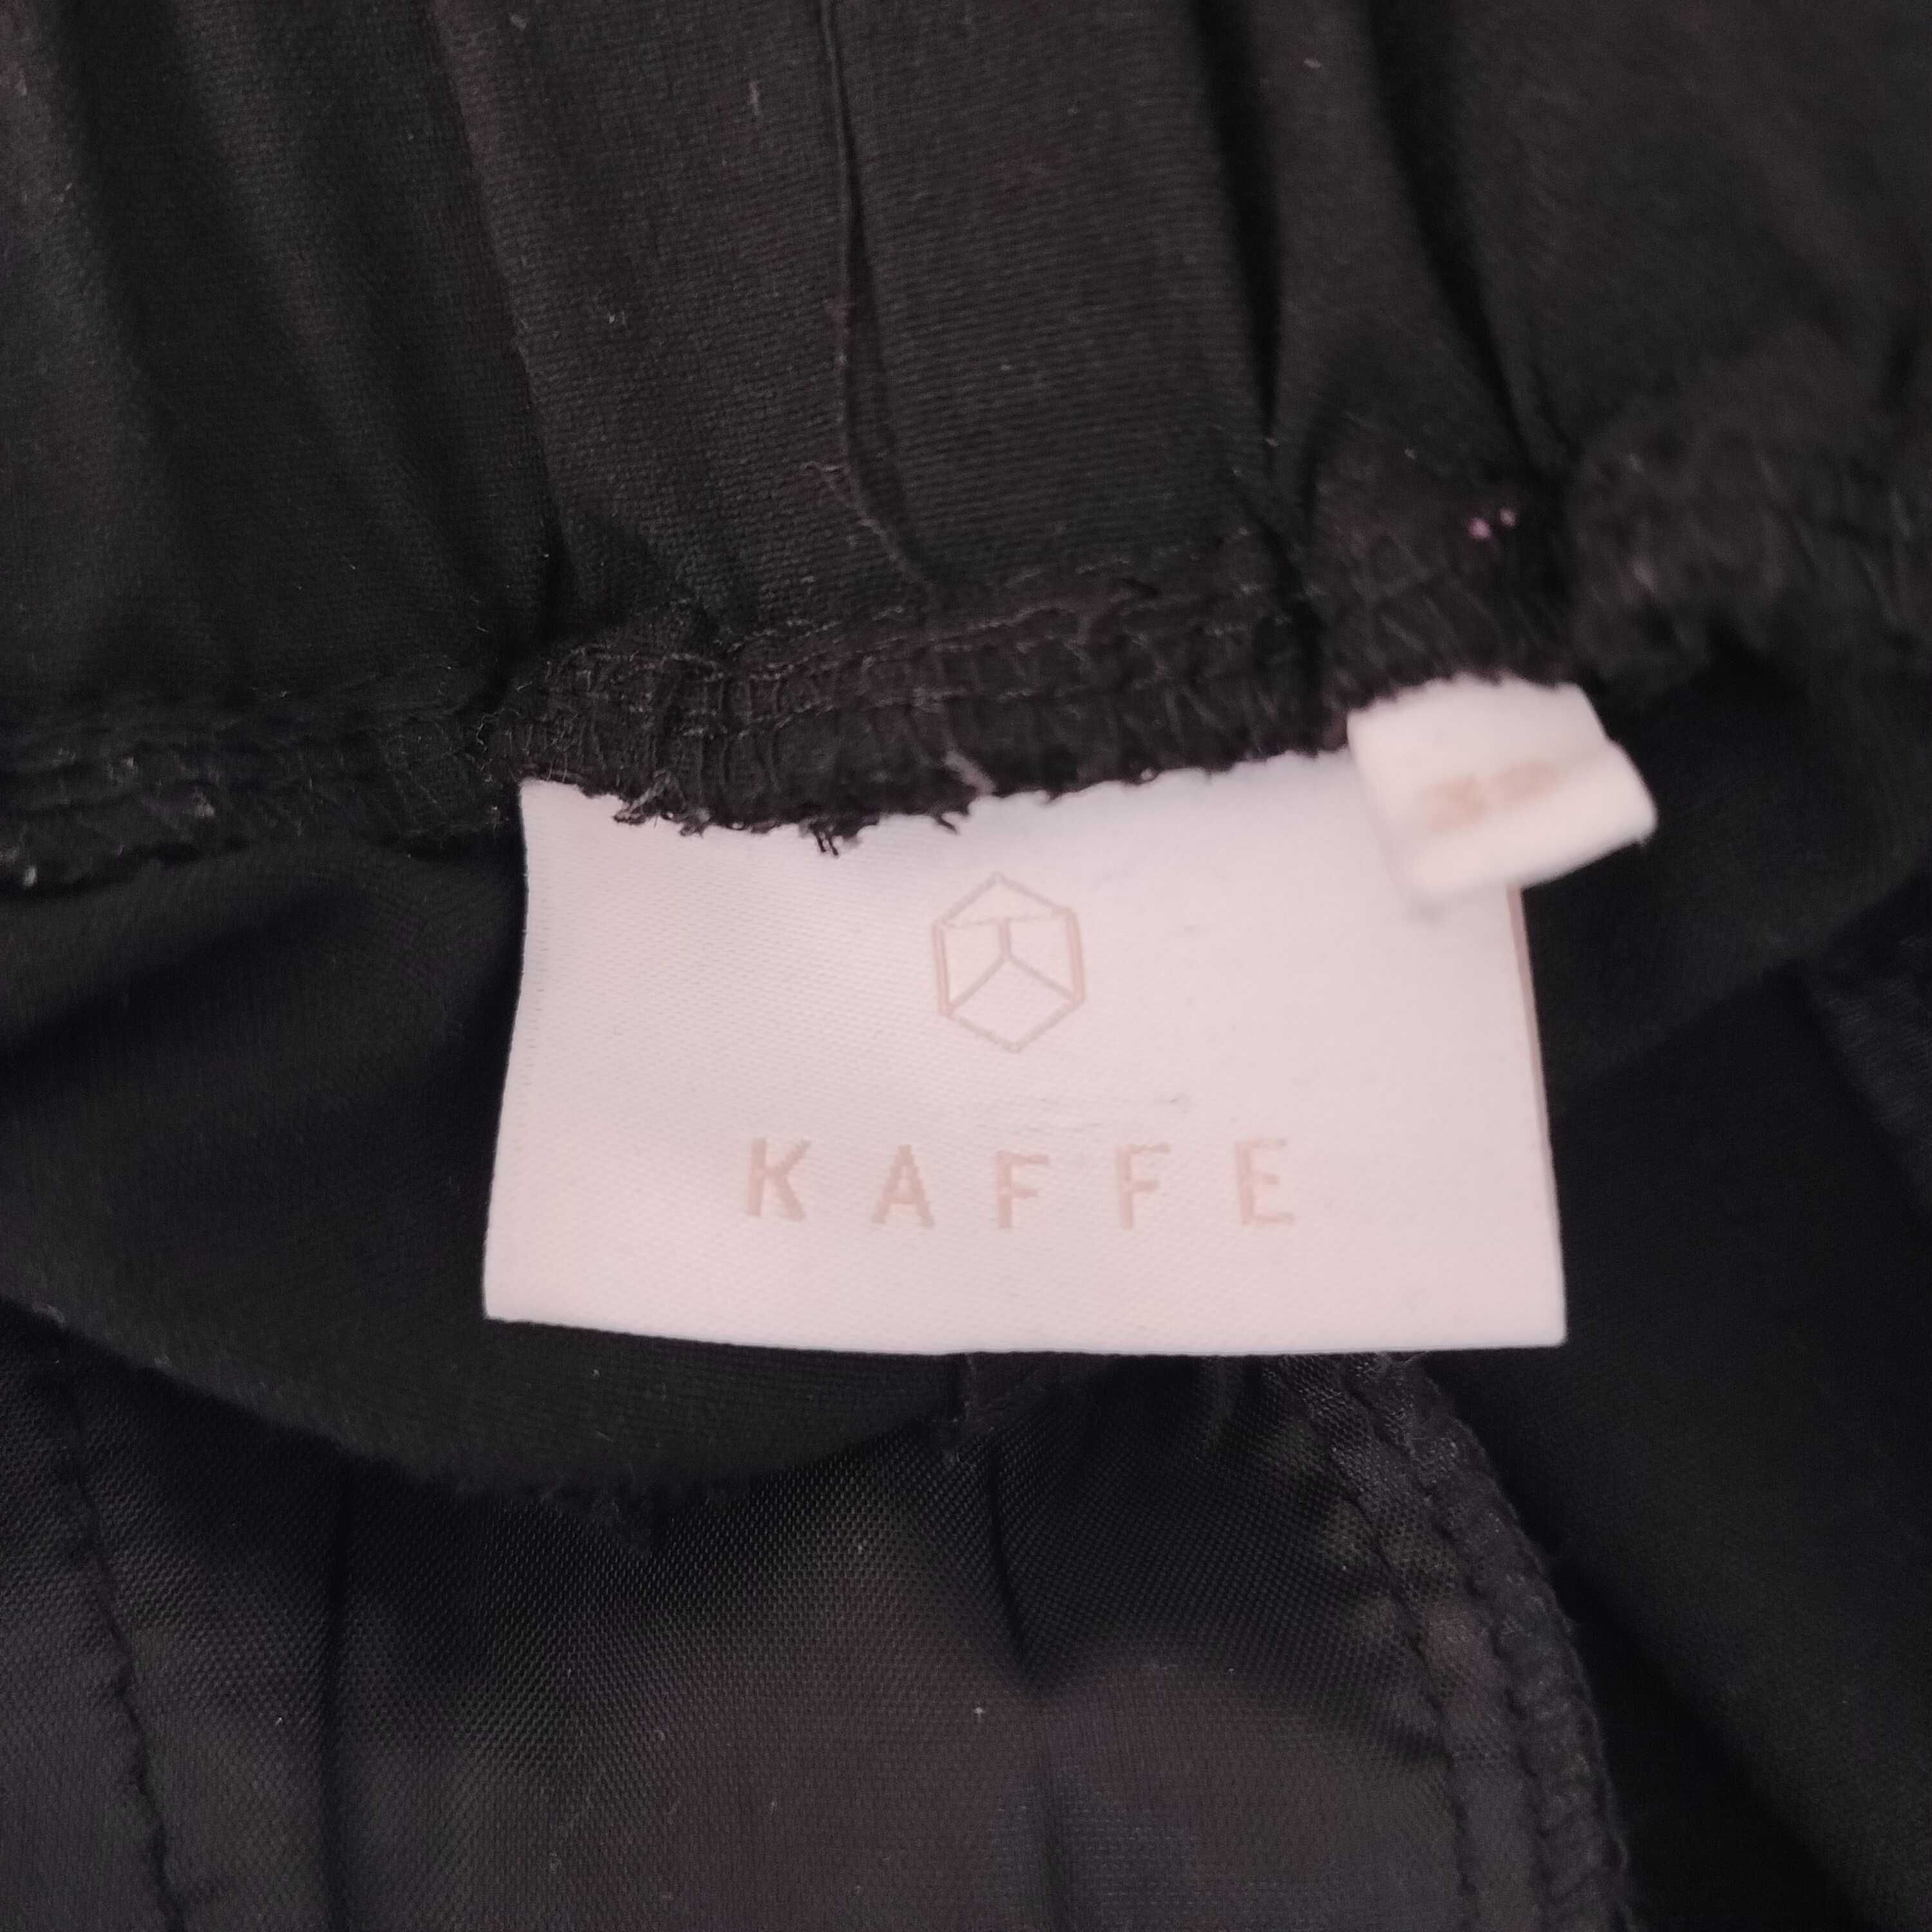 Spodnie krótkie damskie firmy Kaffe rozm. 32